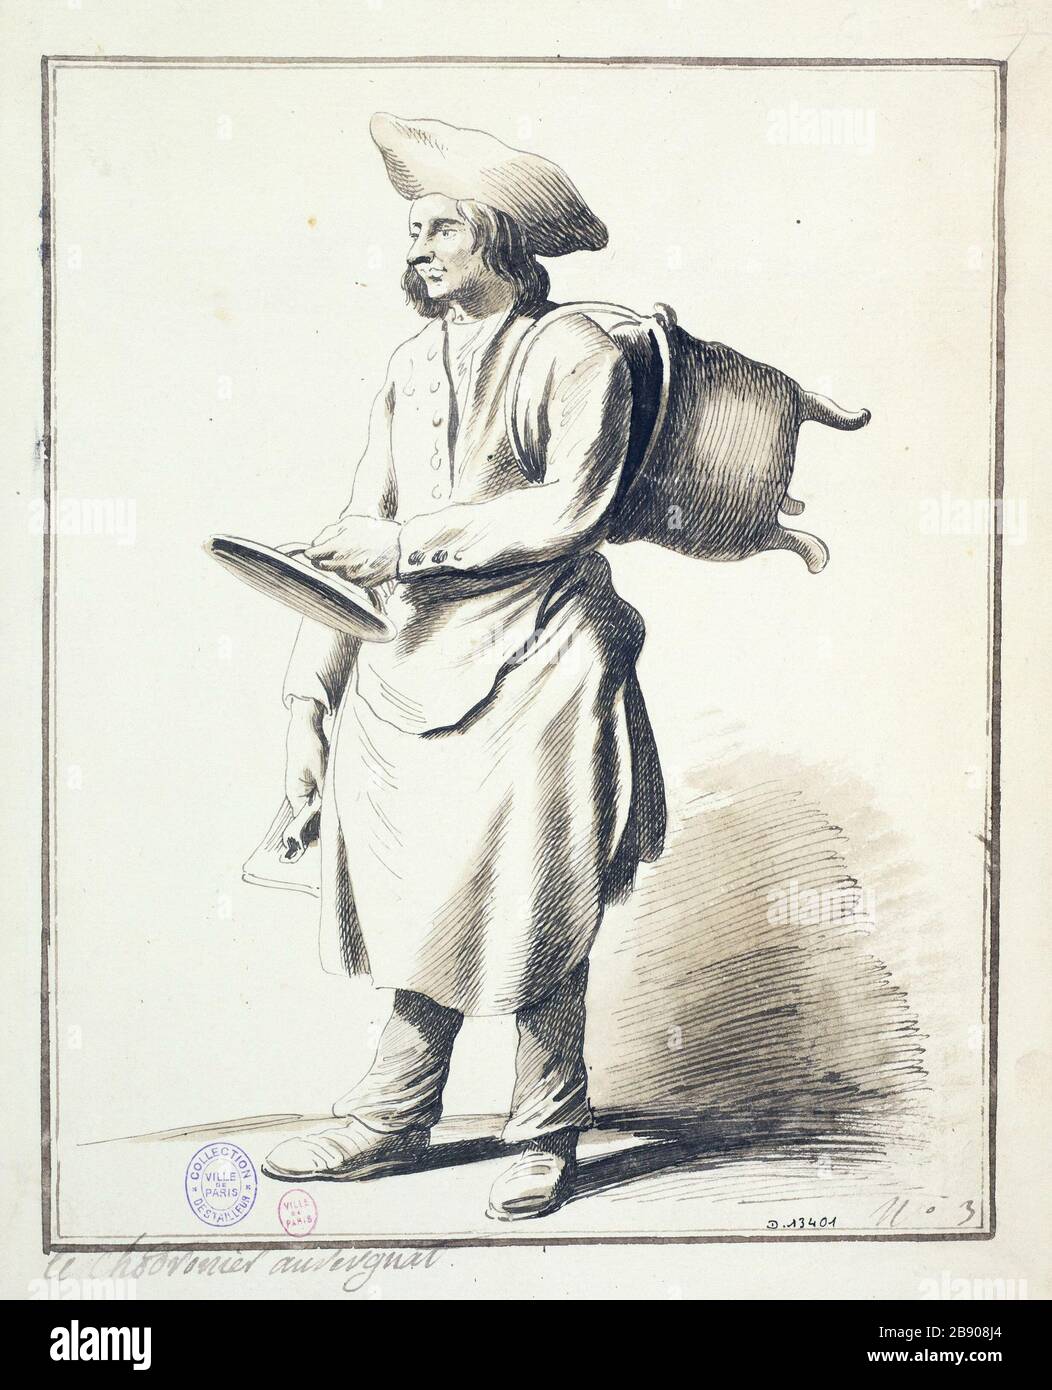 The coppersmith Auvergne Edme Bouchardon (1698-1762). Le chaudronnier auvergnat. Plume et lavis sur papier crème, 1698-1762. Paris, musée Carnavalet. Stock Photo